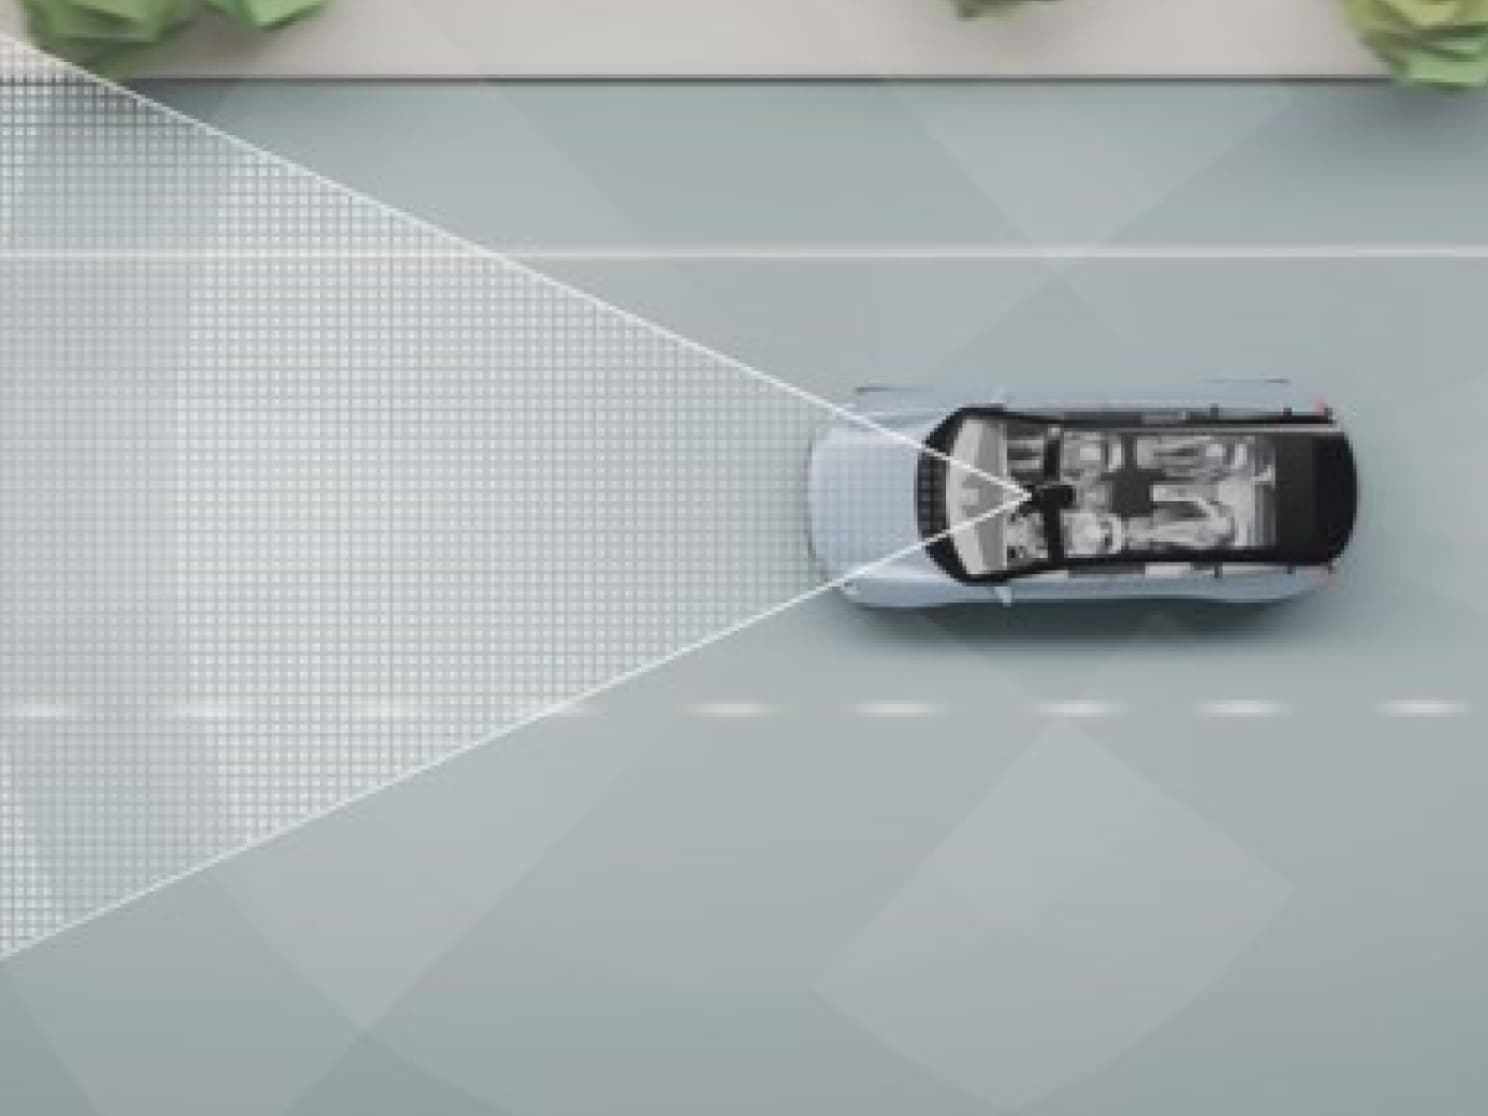 Représentation numérique d'une voiture sur une route avec des lignes et d'autres objets.